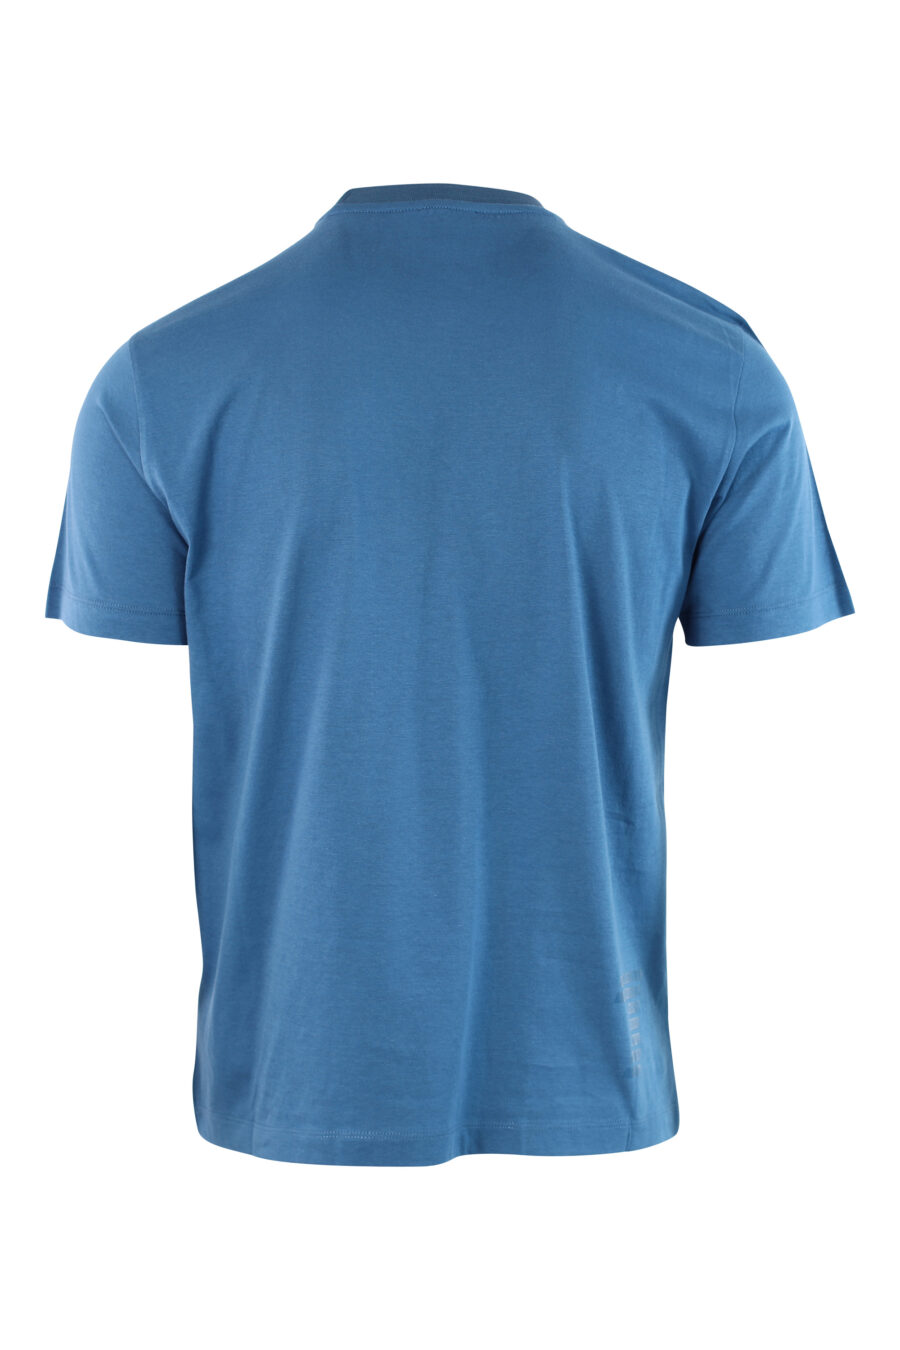 T-shirt azul clara com mini-logotipo no emblema - IMG 3798